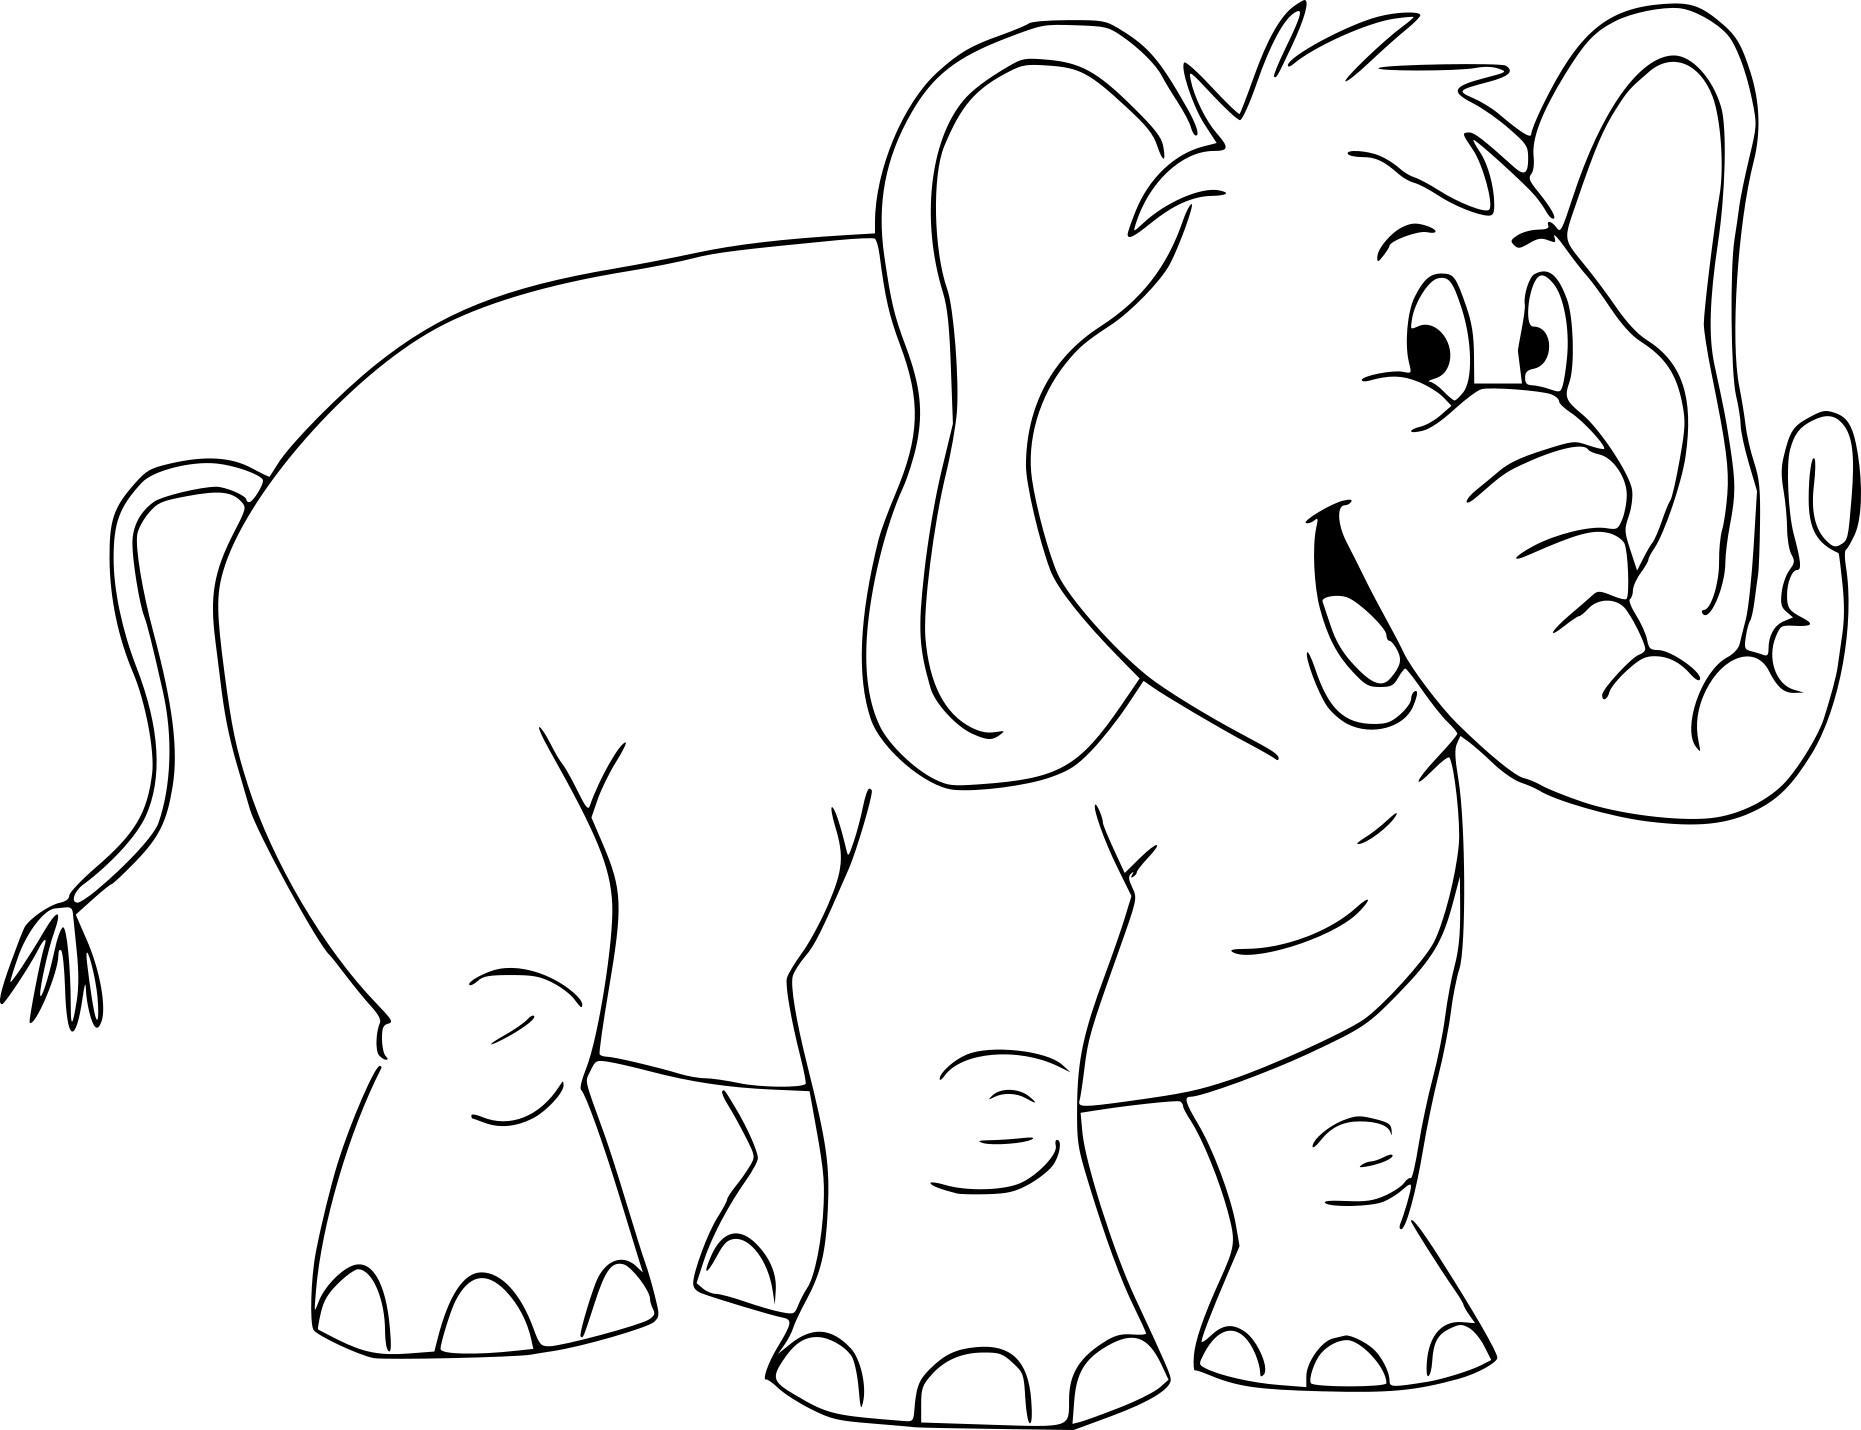 Tranh tô màu con voi hoạt hình đẹp